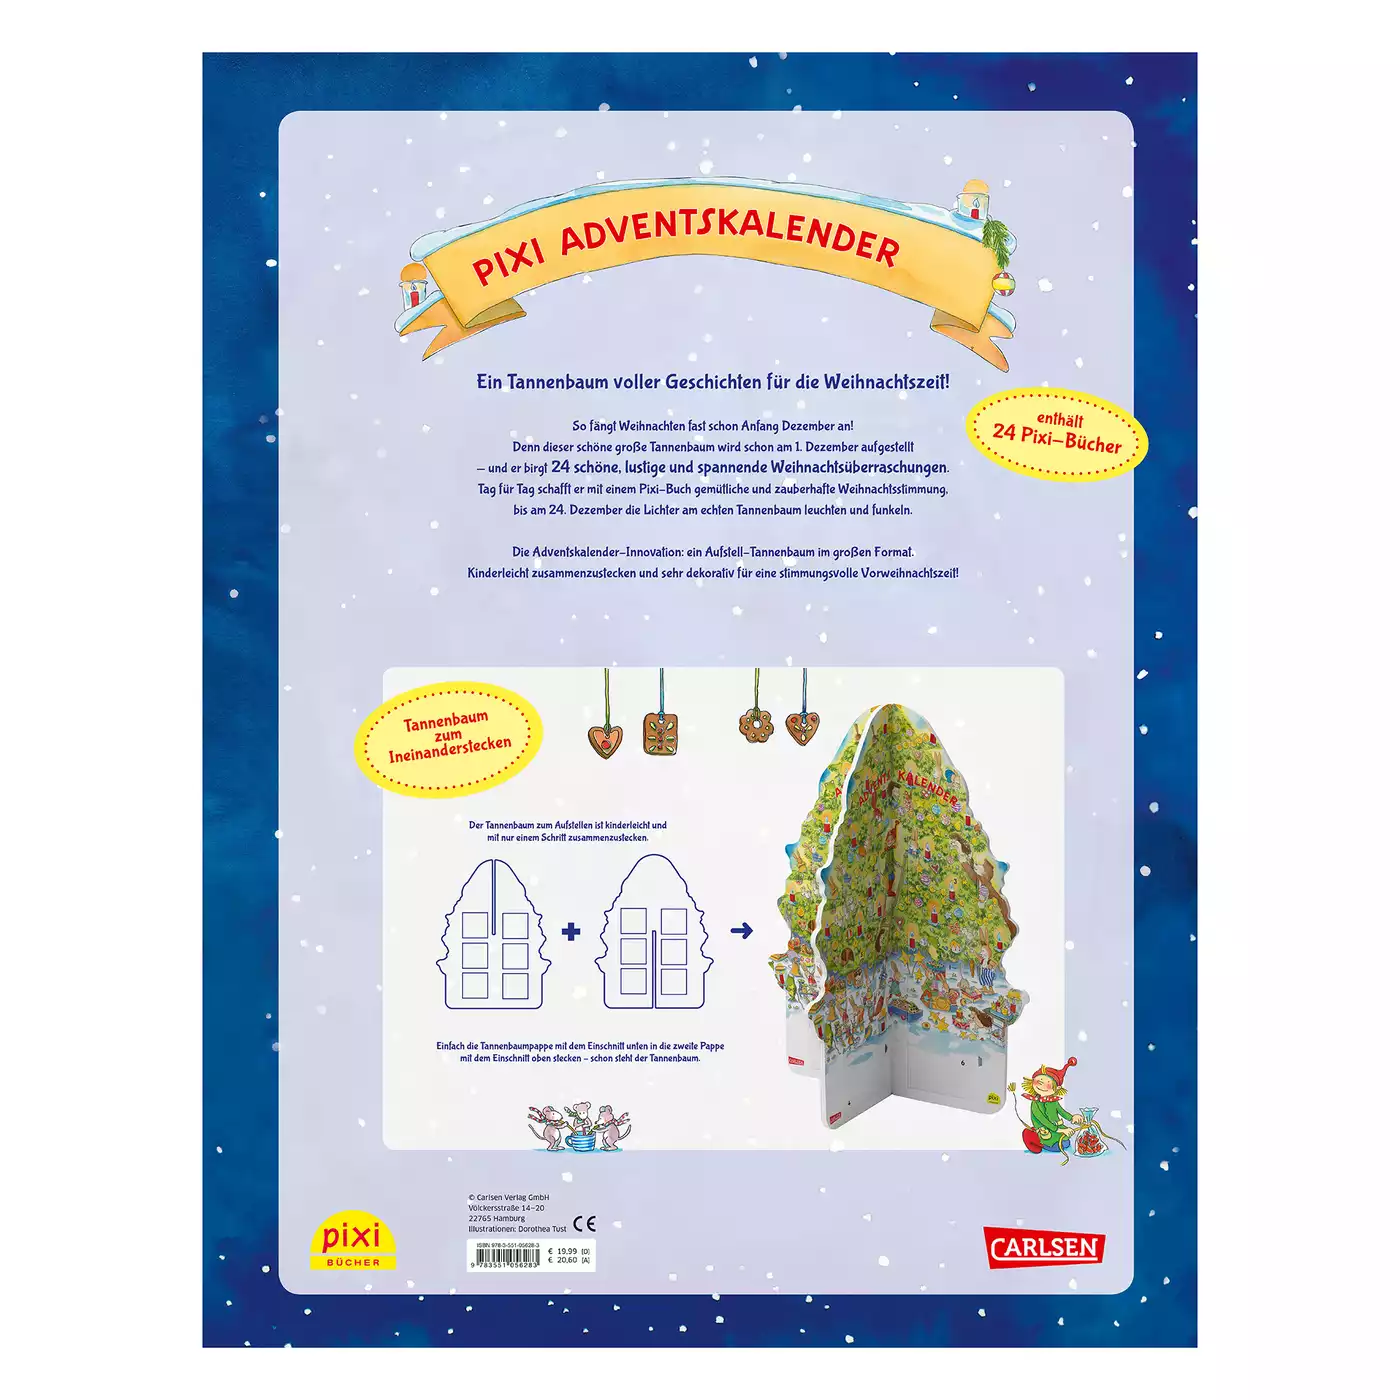 Pixi Adventskalender in Weihnachtsbaumform CARLSEN 2000577525805 6